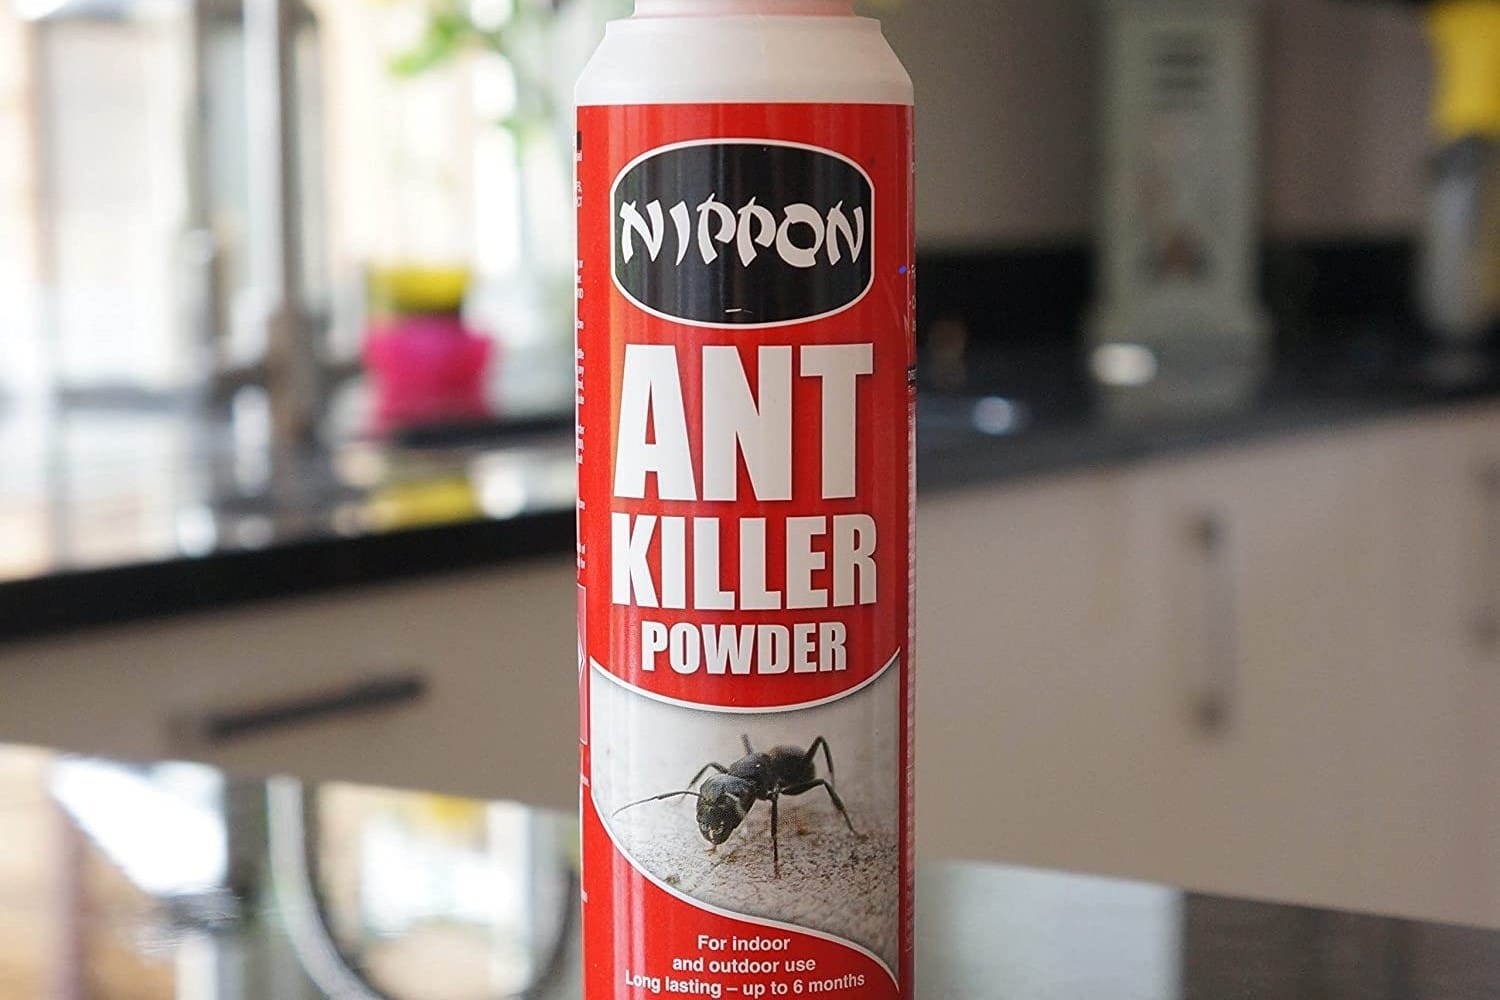 Raid Ant Killer. Powder killer